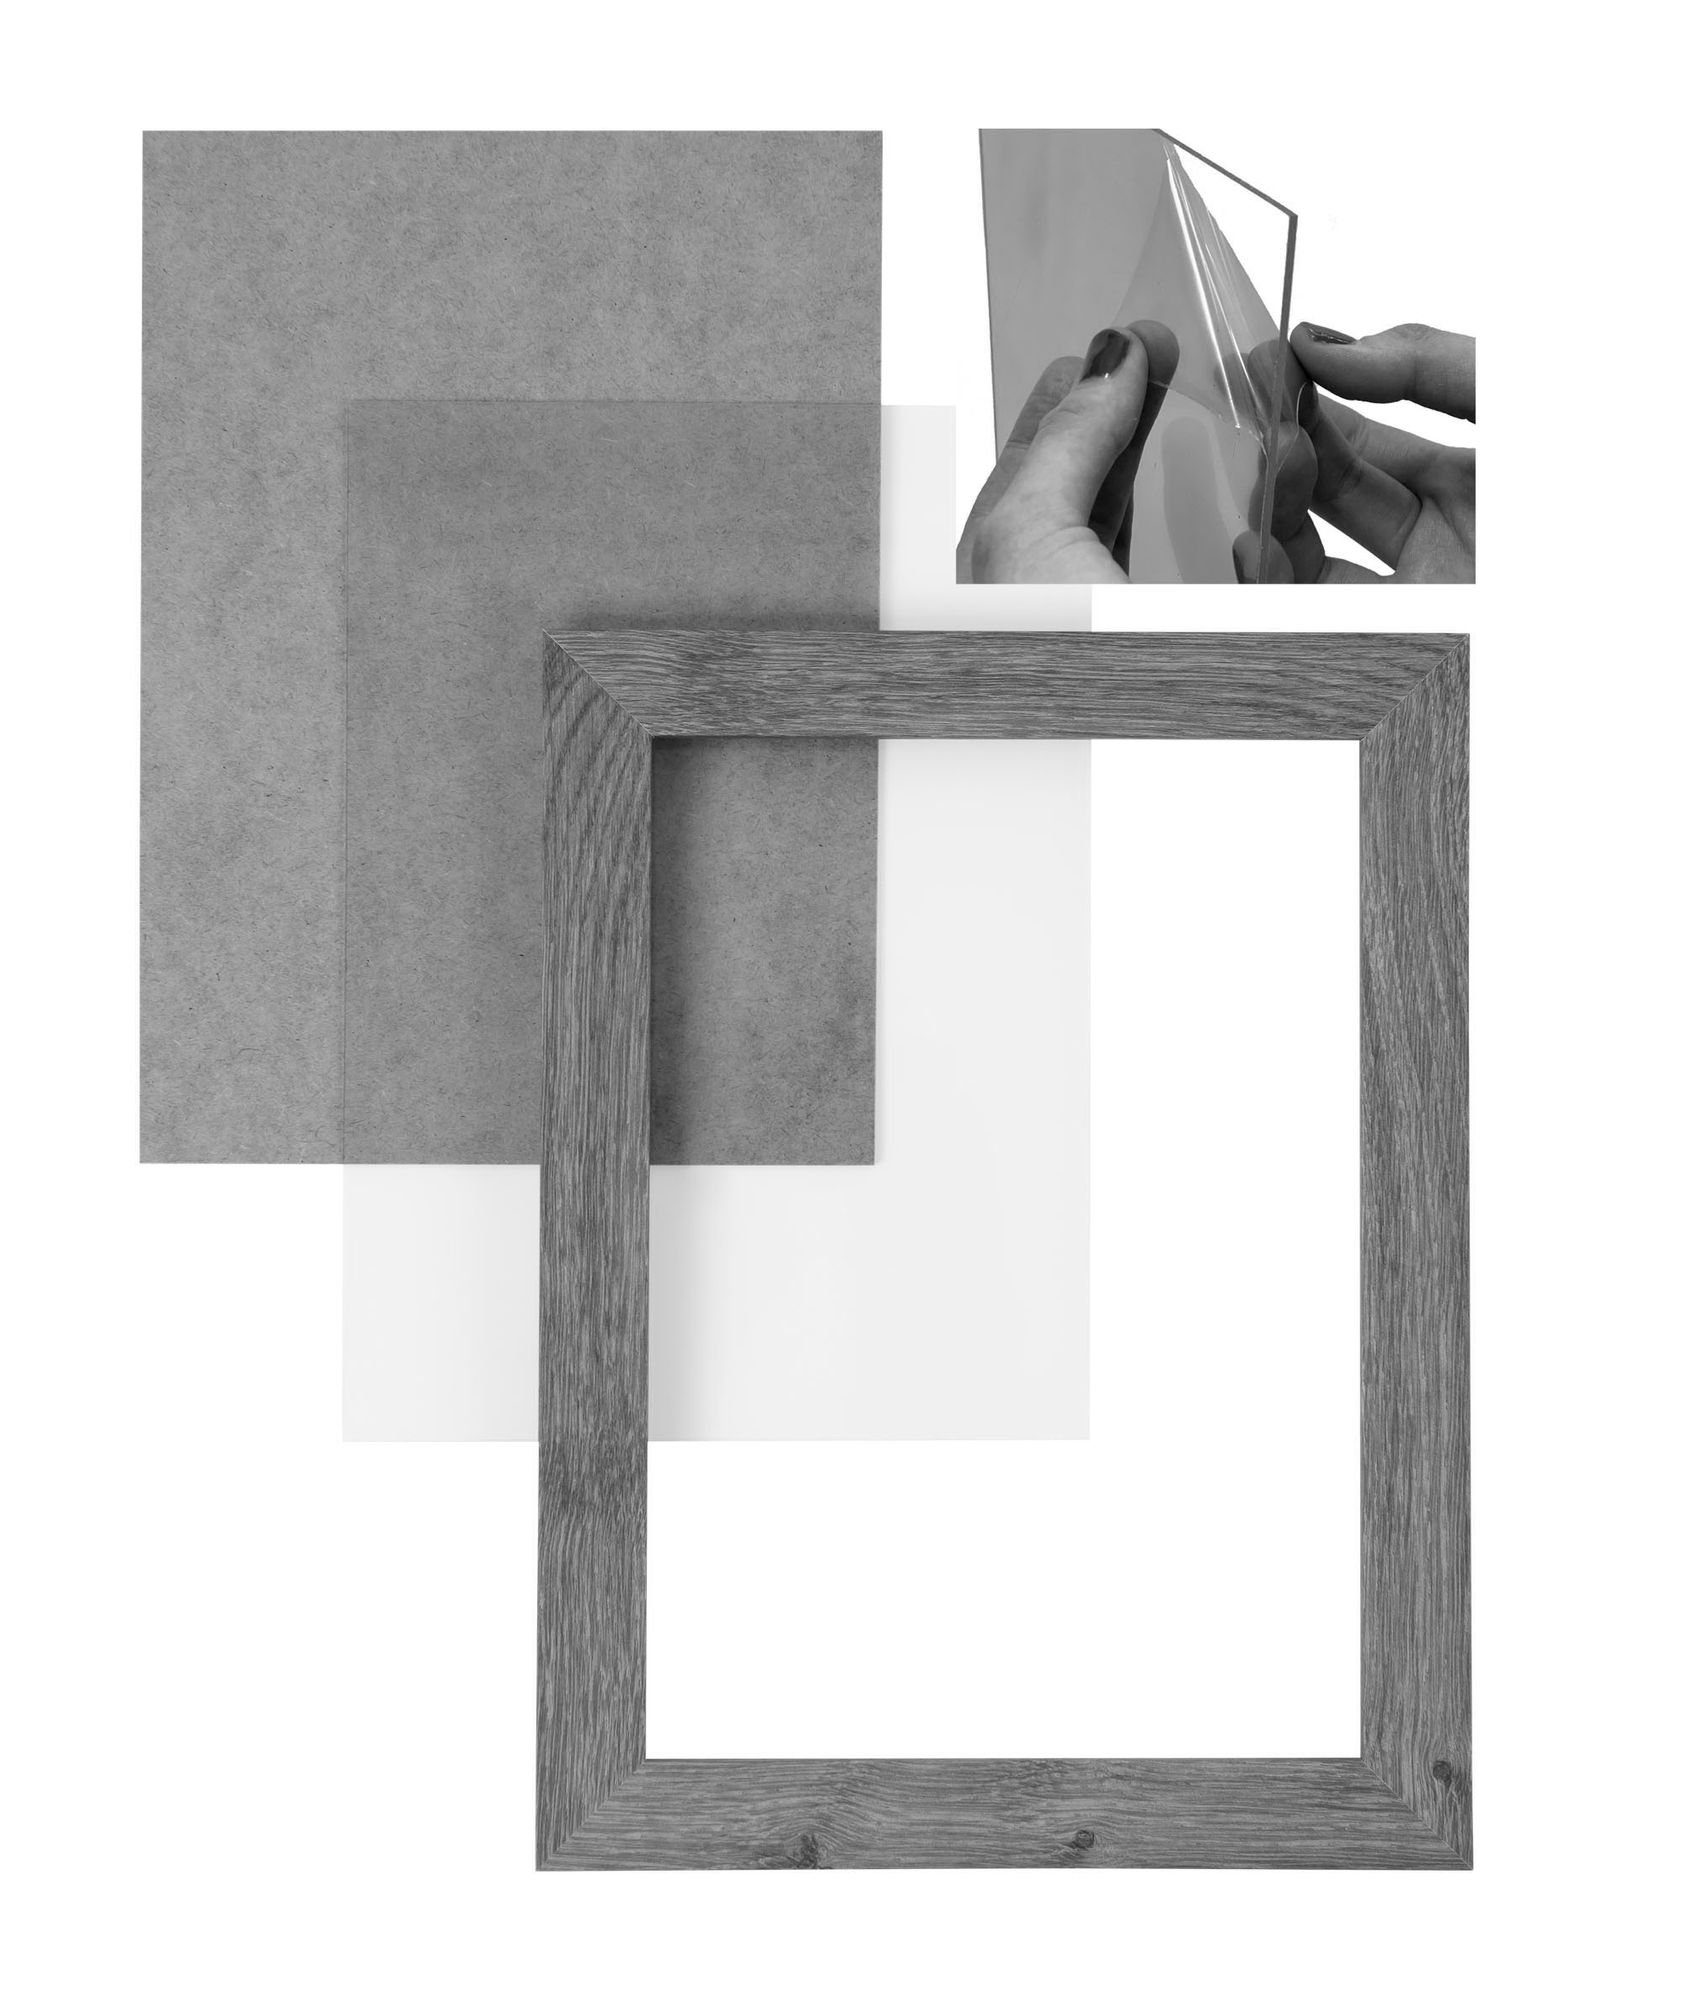 Maß MDF Rahmen CLAMARO handgefertigt nach Bilderrahmen 43x61 Holz Bilderrahmen in altholz 'Collage' FSC® Acrylglas, inkl. Moderner Clamaro Aufhänger eiche Rückwand eckiger und